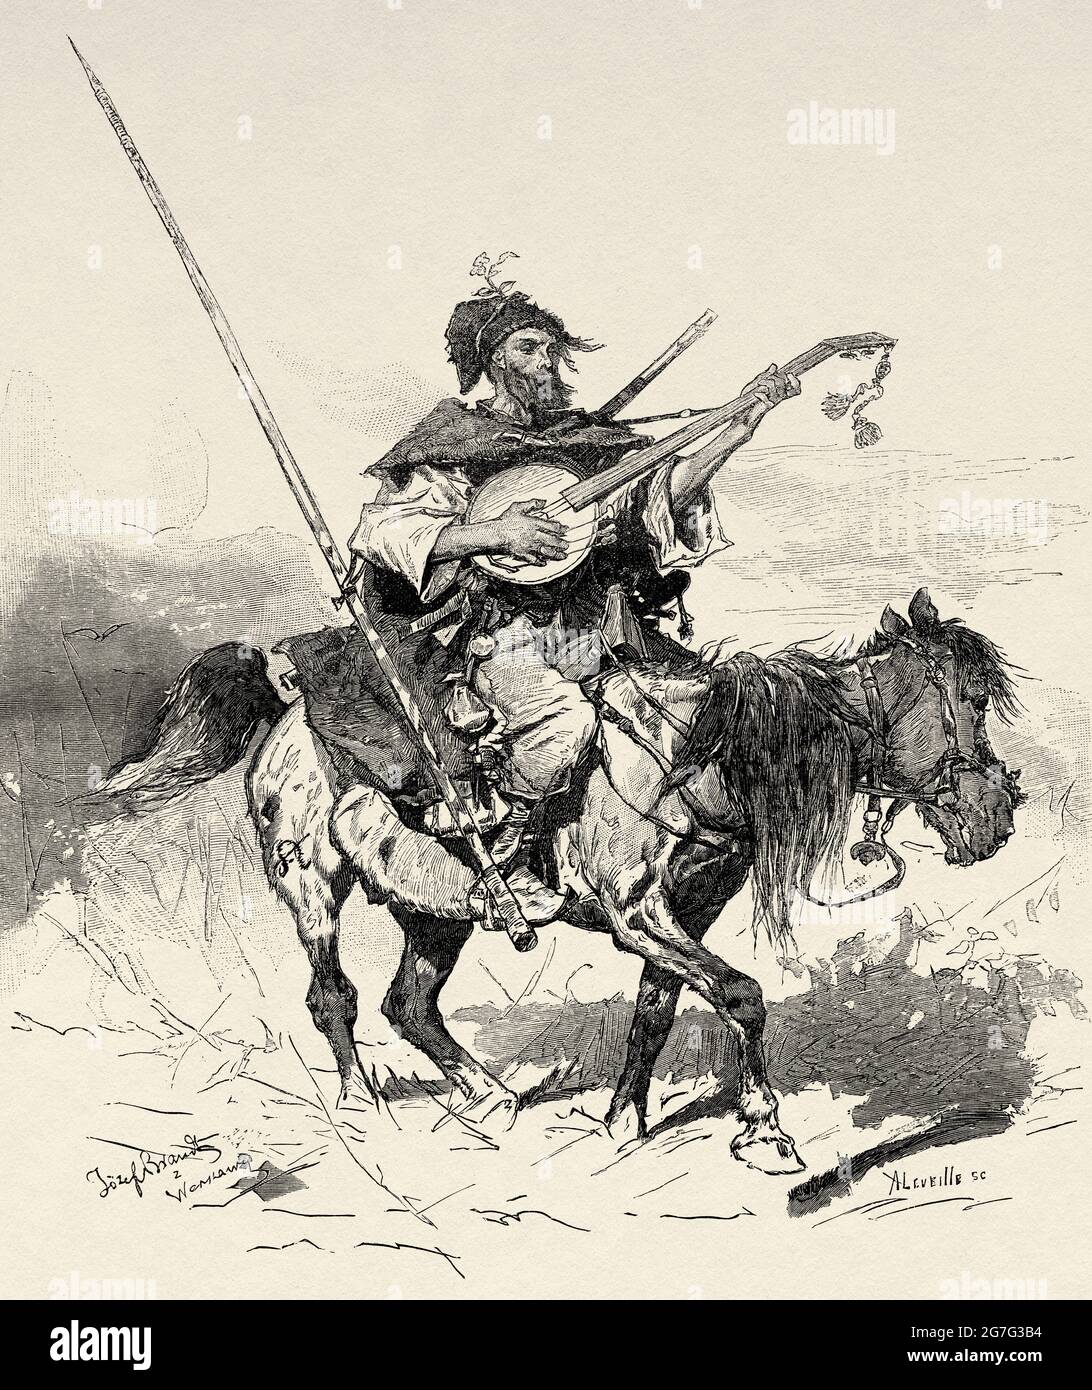 Ukrainien Cossack monté à cheval jouant une guitare, Ukraine, Europe. Ancienne illustration gravée du XIXe siècle d'El Mundo Ilustrado 1880 Banque D'Images